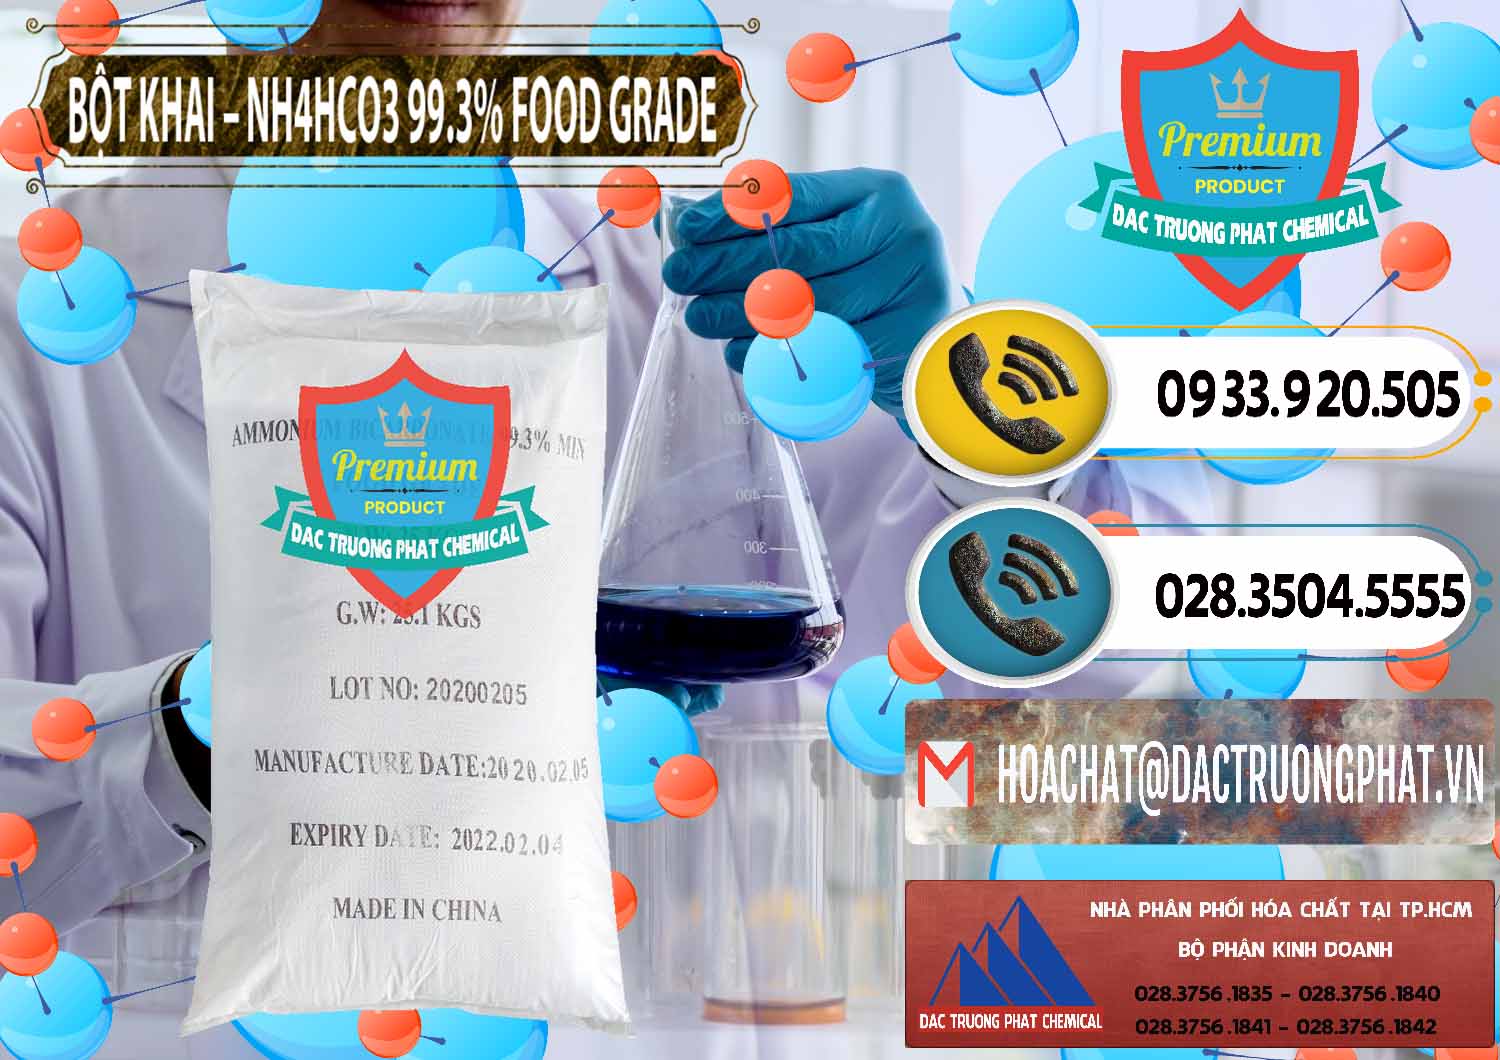 Chuyên cung ứng ( bán ) Ammonium Bicarbonate – Bột Khai NH4HCO3 Food Grade Trung Quốc China - 0019 - Chuyên phân phối ( cung cấp ) hóa chất tại TP.HCM - hoachatdetnhuom.vn